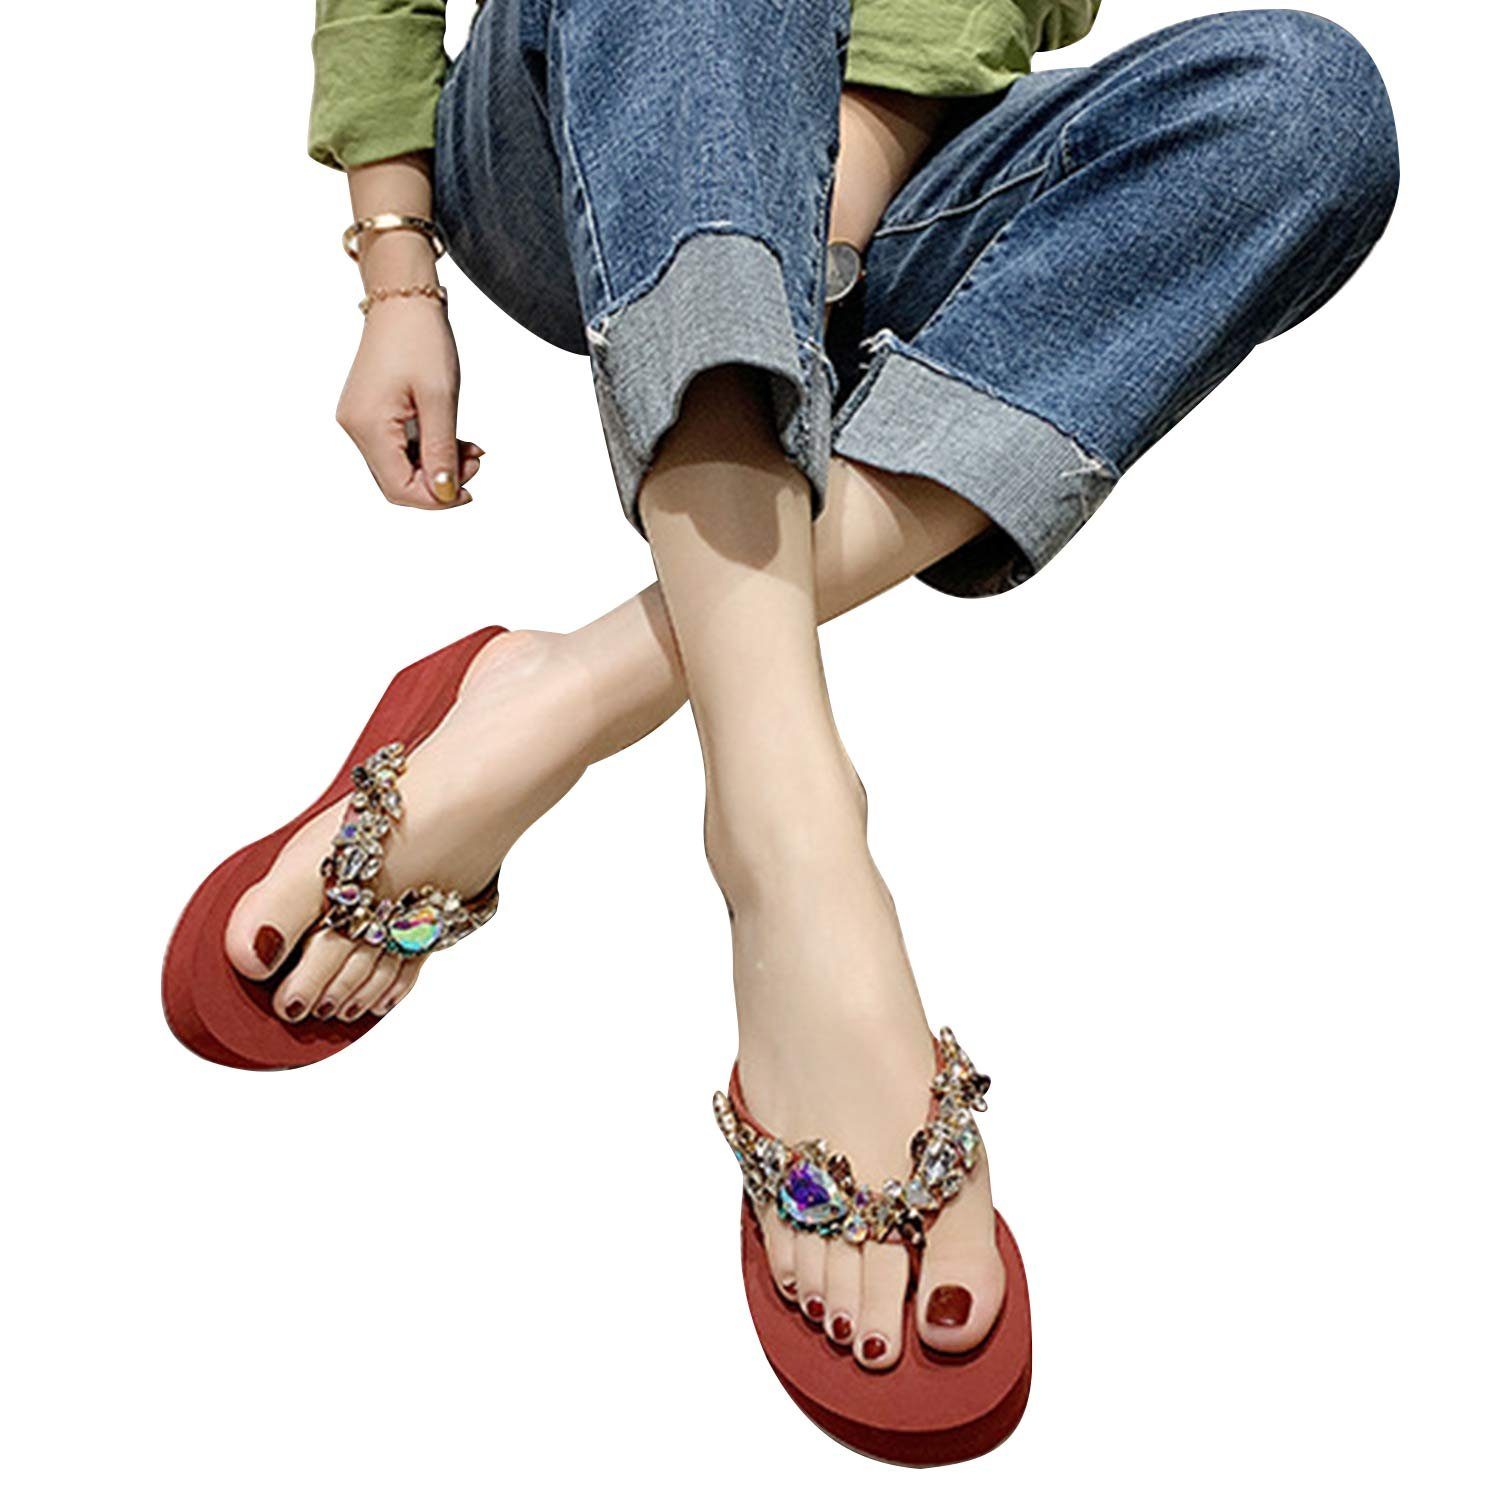 MAGICSHE Plateau pantoletten mit Keilabsatz Pantolette Zehentrenner Damen Hausschuhe mit Strass Pailletten Dekoration auf der Außenseite rot